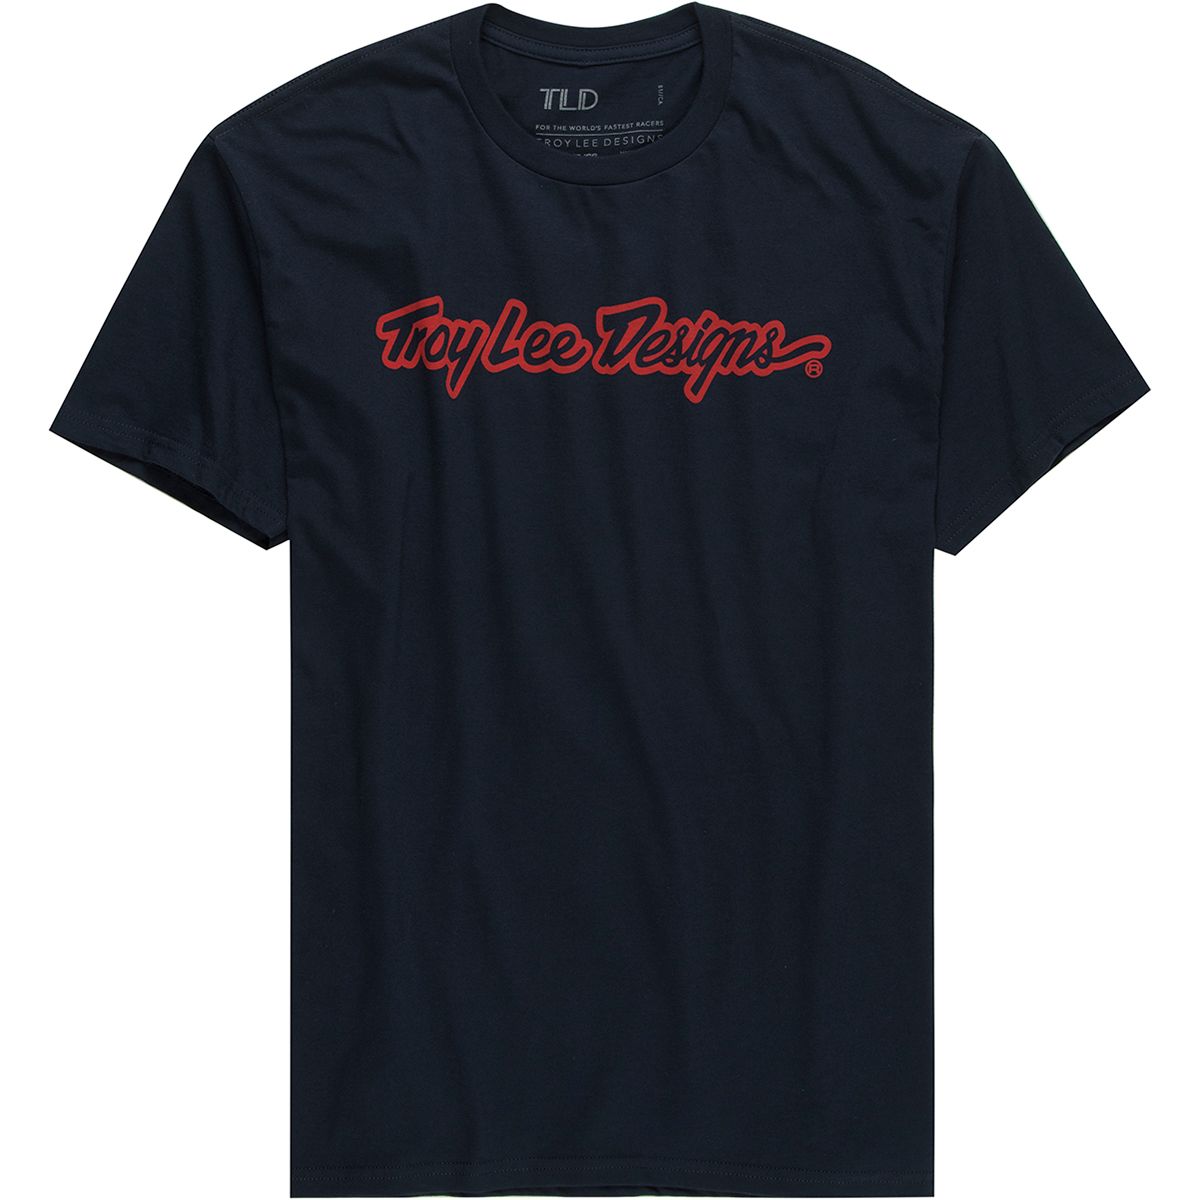 Troy Lee Designs Signature T-Shirt - Men's